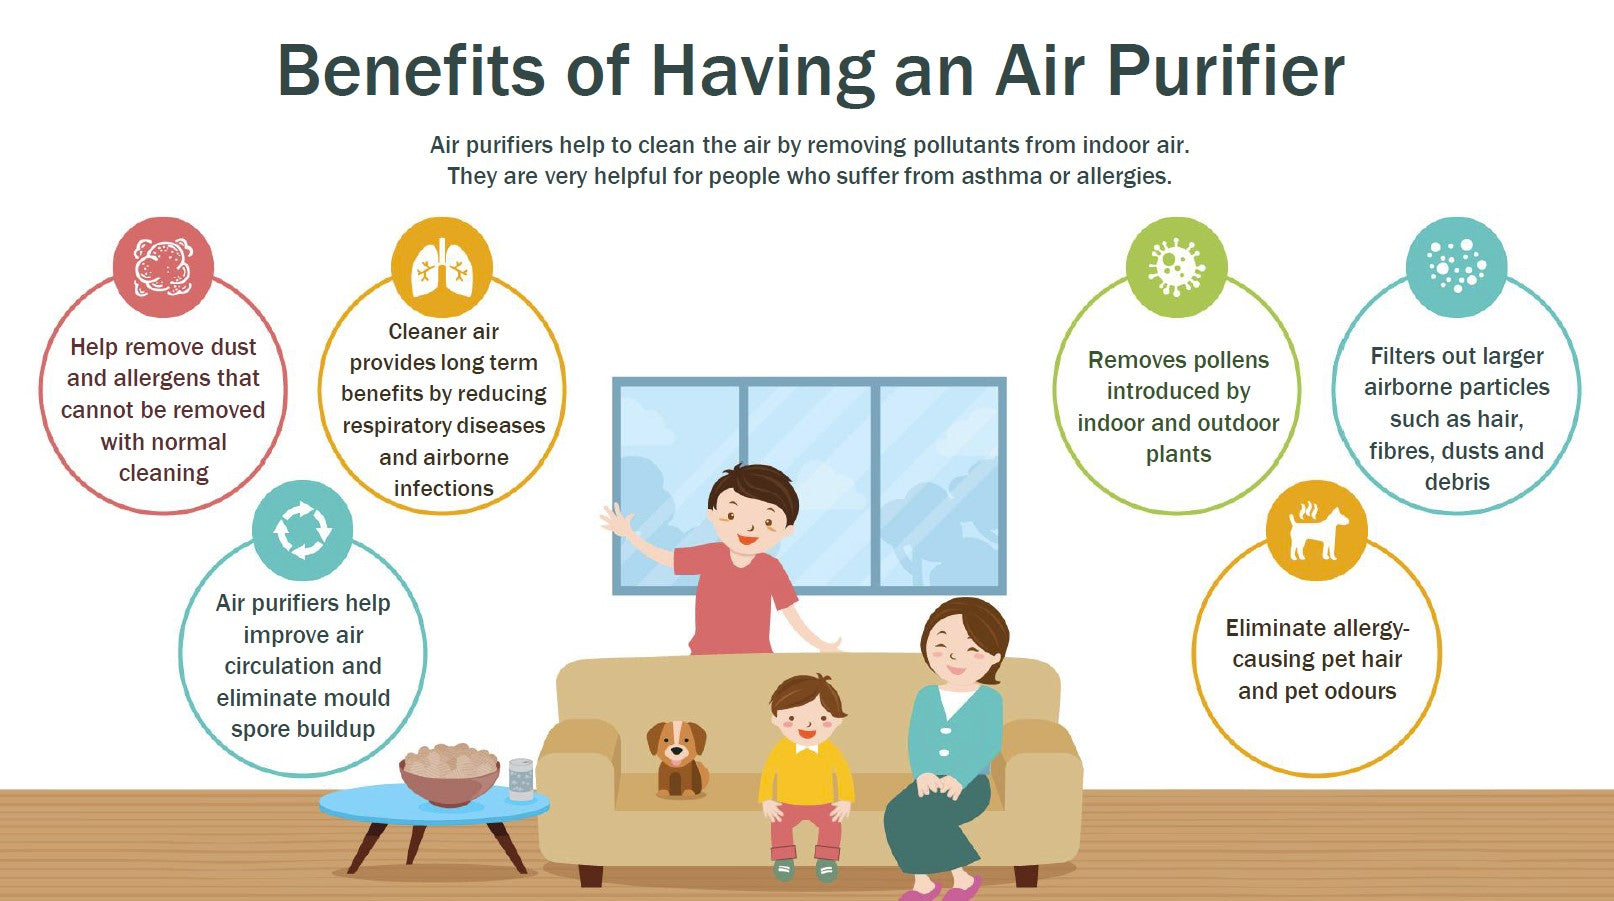 Benefits of having an air purifier